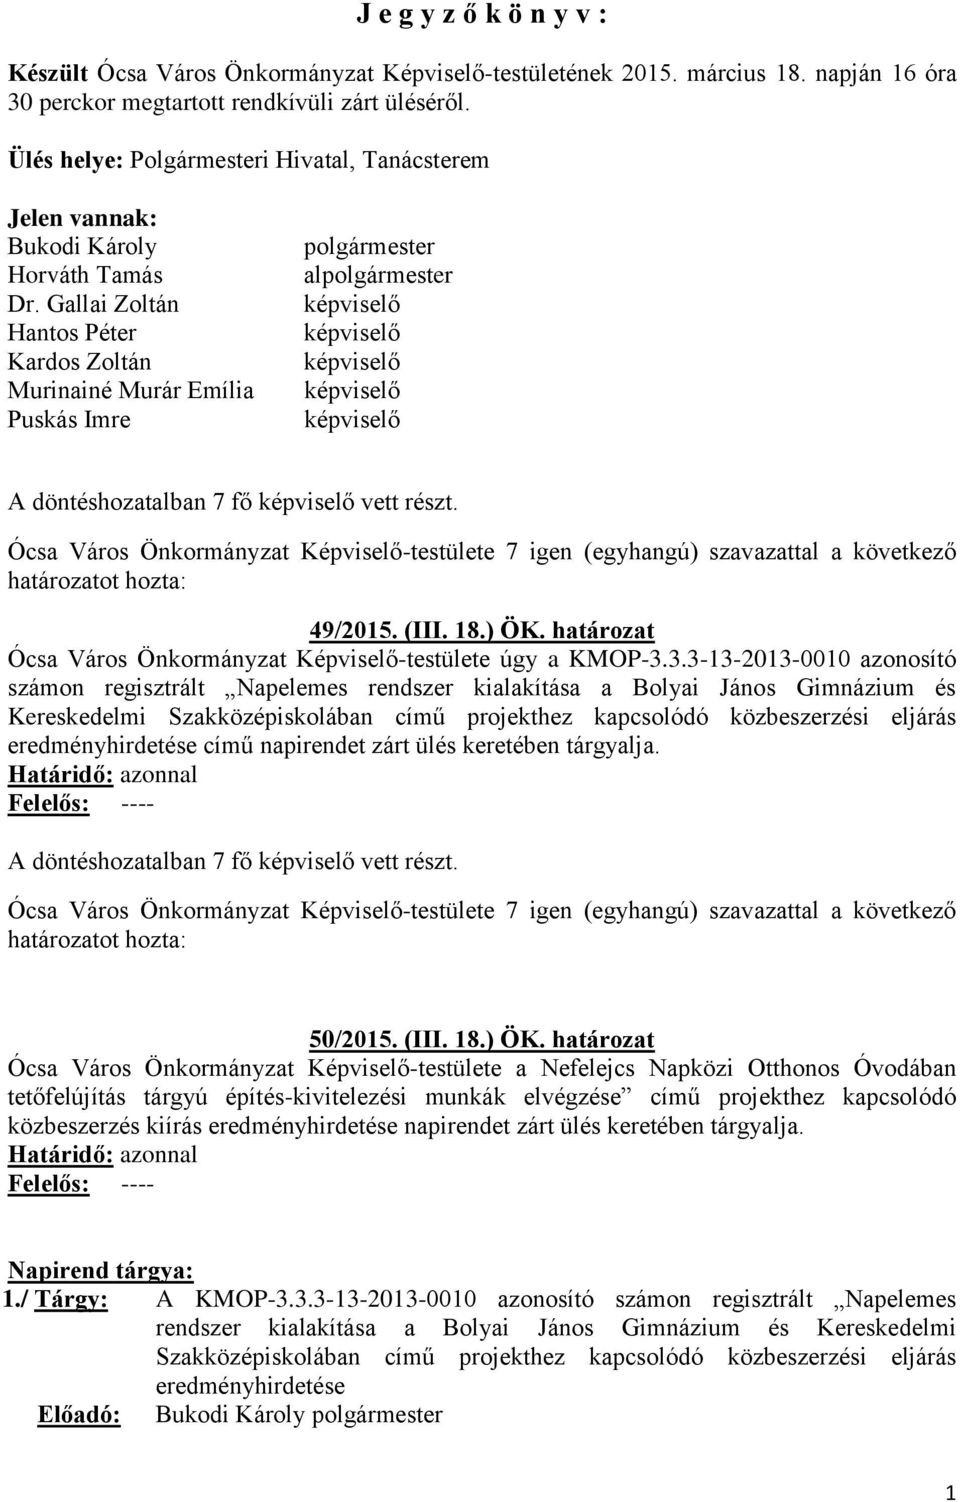 Ócsa Város Önkormányzat Képviselő-testülete 7 (egyhangú) szavazattal a következő határozatot hozta: 49/2015. (III. 18.) ÖK. határozat Ócsa Város Önkormányzat Képviselő-testülete úgy a KMOP-3.